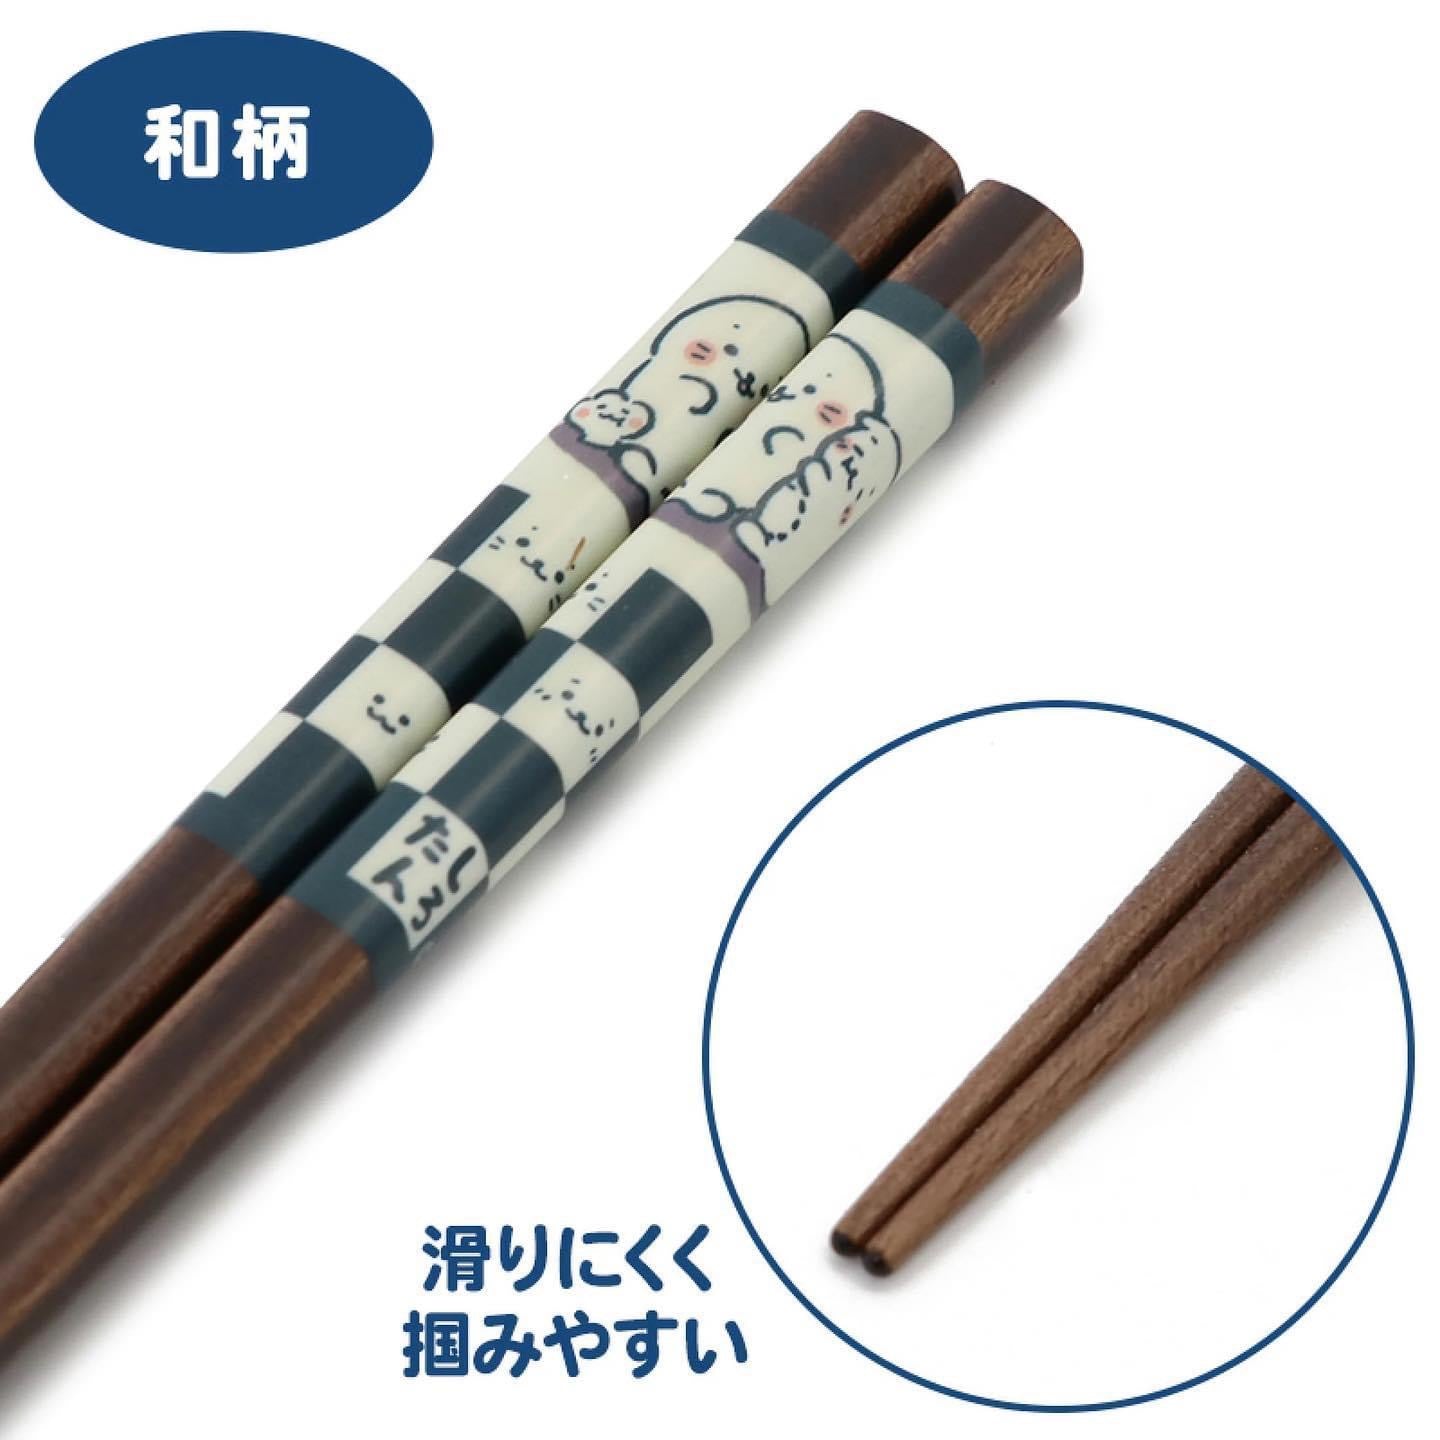 Sirotan 和風格子 21cm 木製筷子